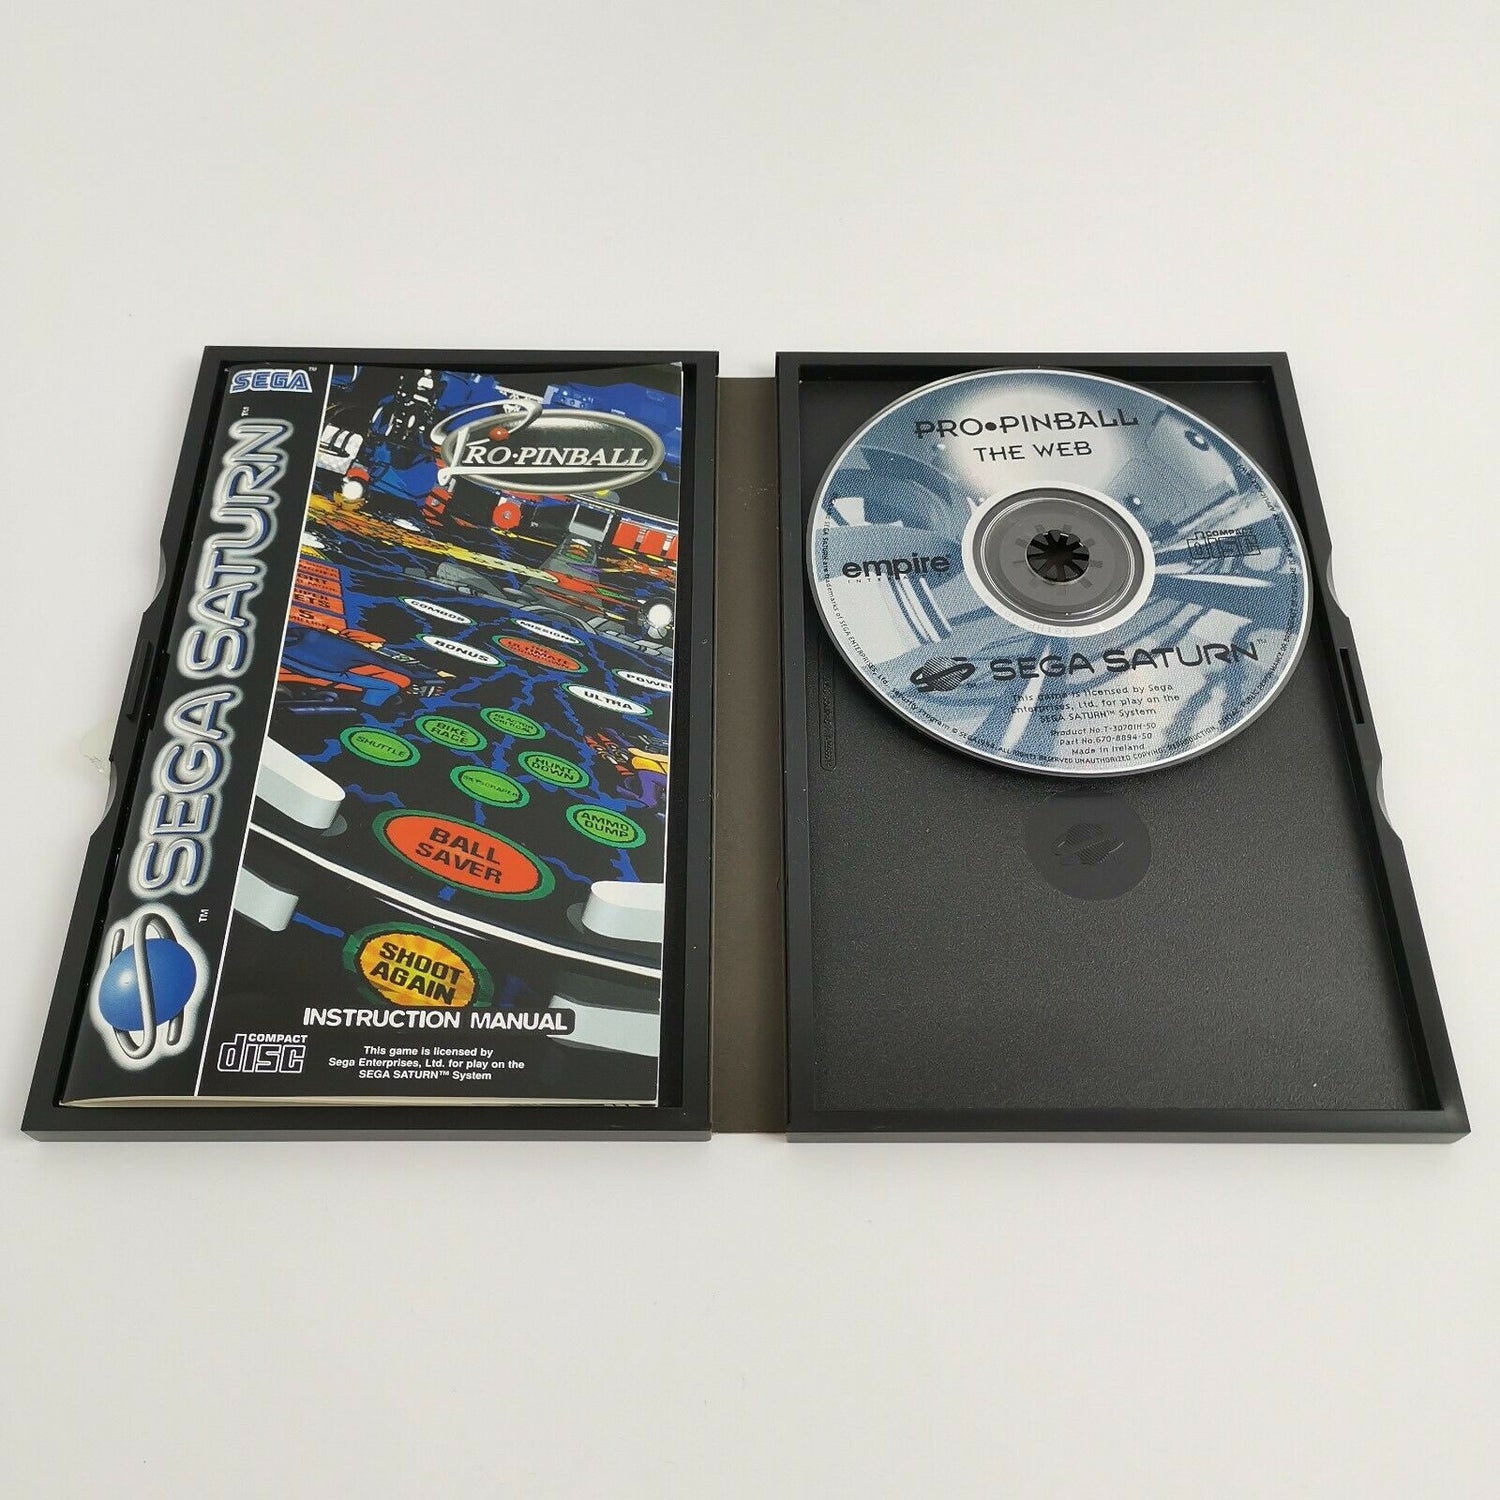 Sega Saturn game 